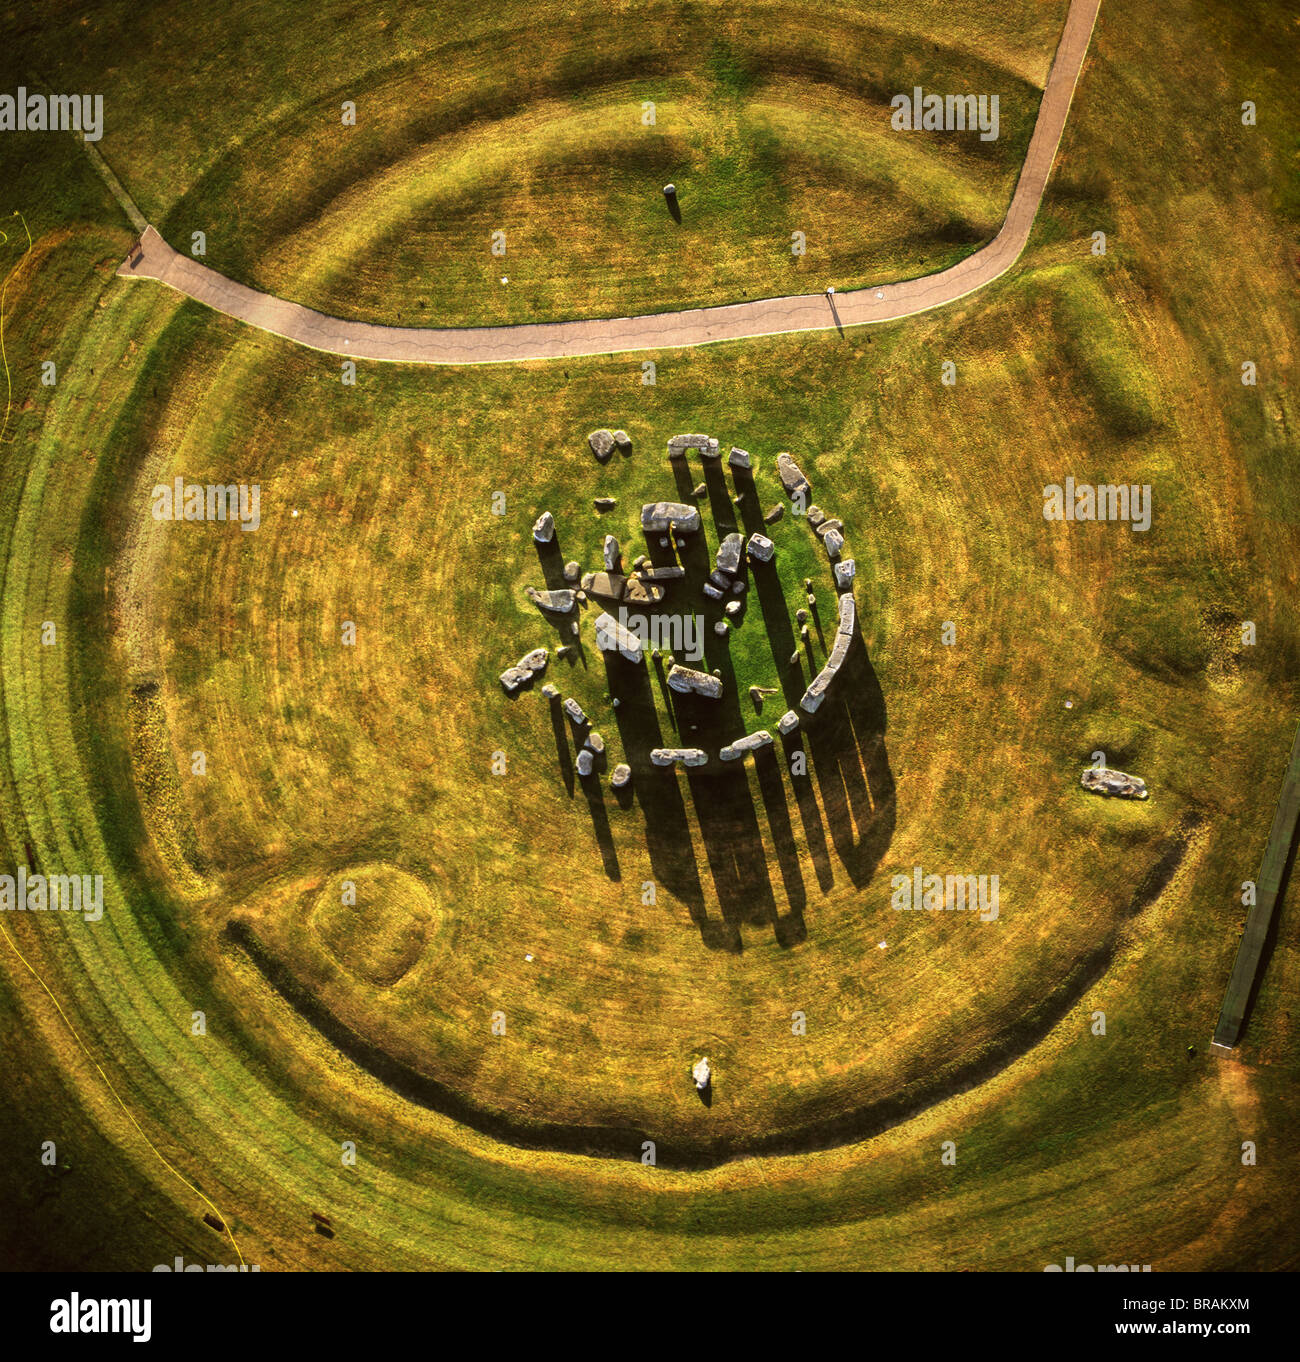 Image aérienne de Stonehenge, monument préhistorique et Stone Circle, l'UNESCO, la plaine de Salisbury, Wiltshire, Angleterre, Royaume-Uni Banque D'Images